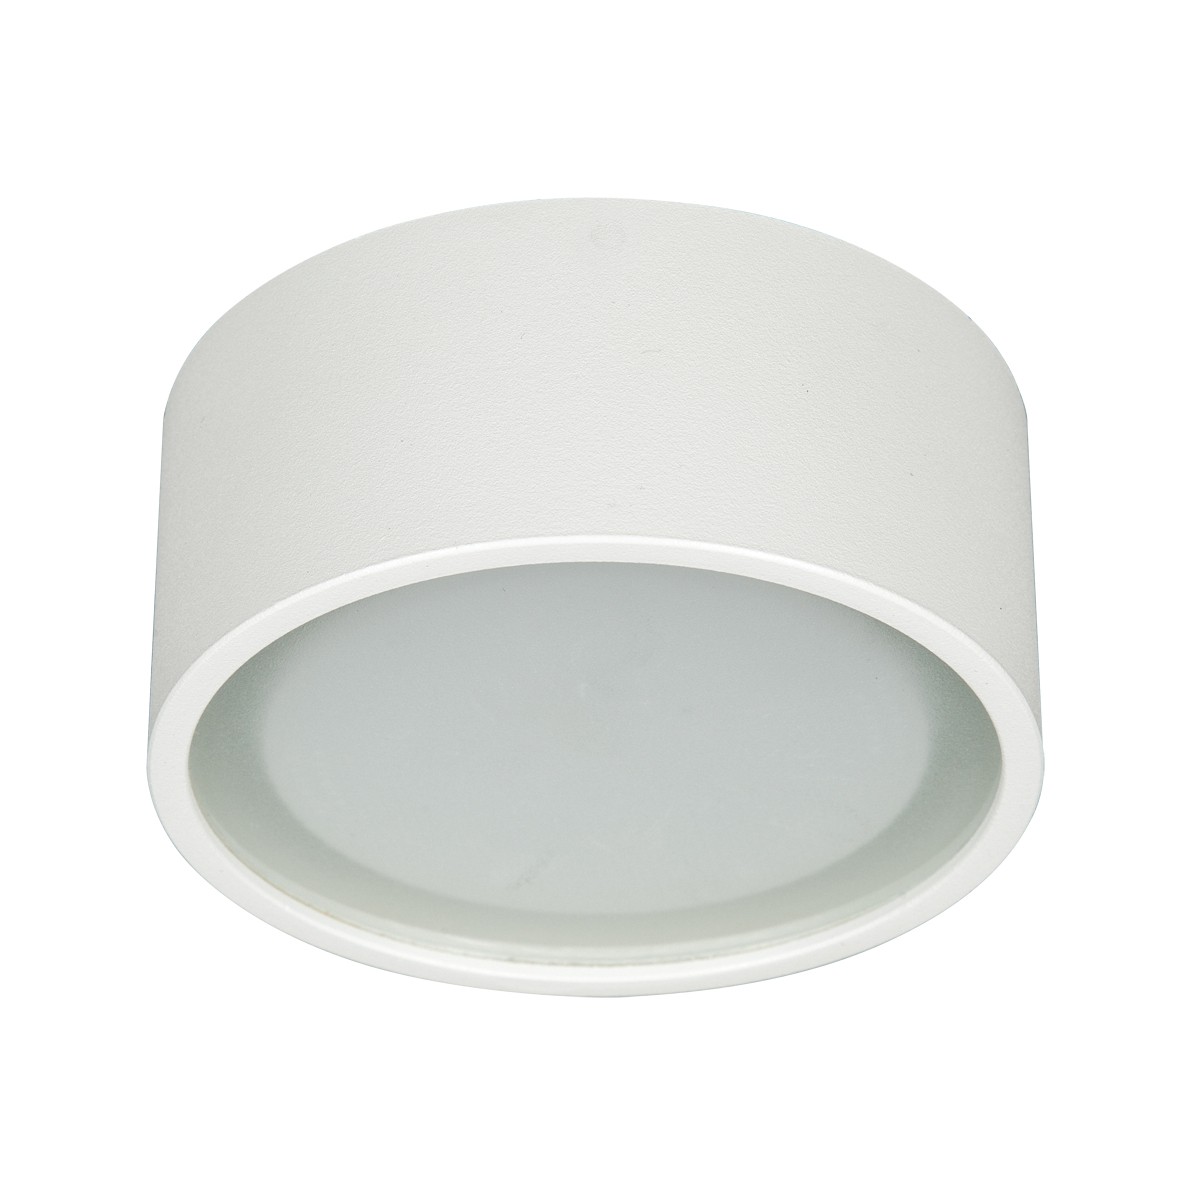 Φωτιστικό Οροφής αλουμινίου στρογγυλόGX53 max 7W  λευκό VK/03110CE/W